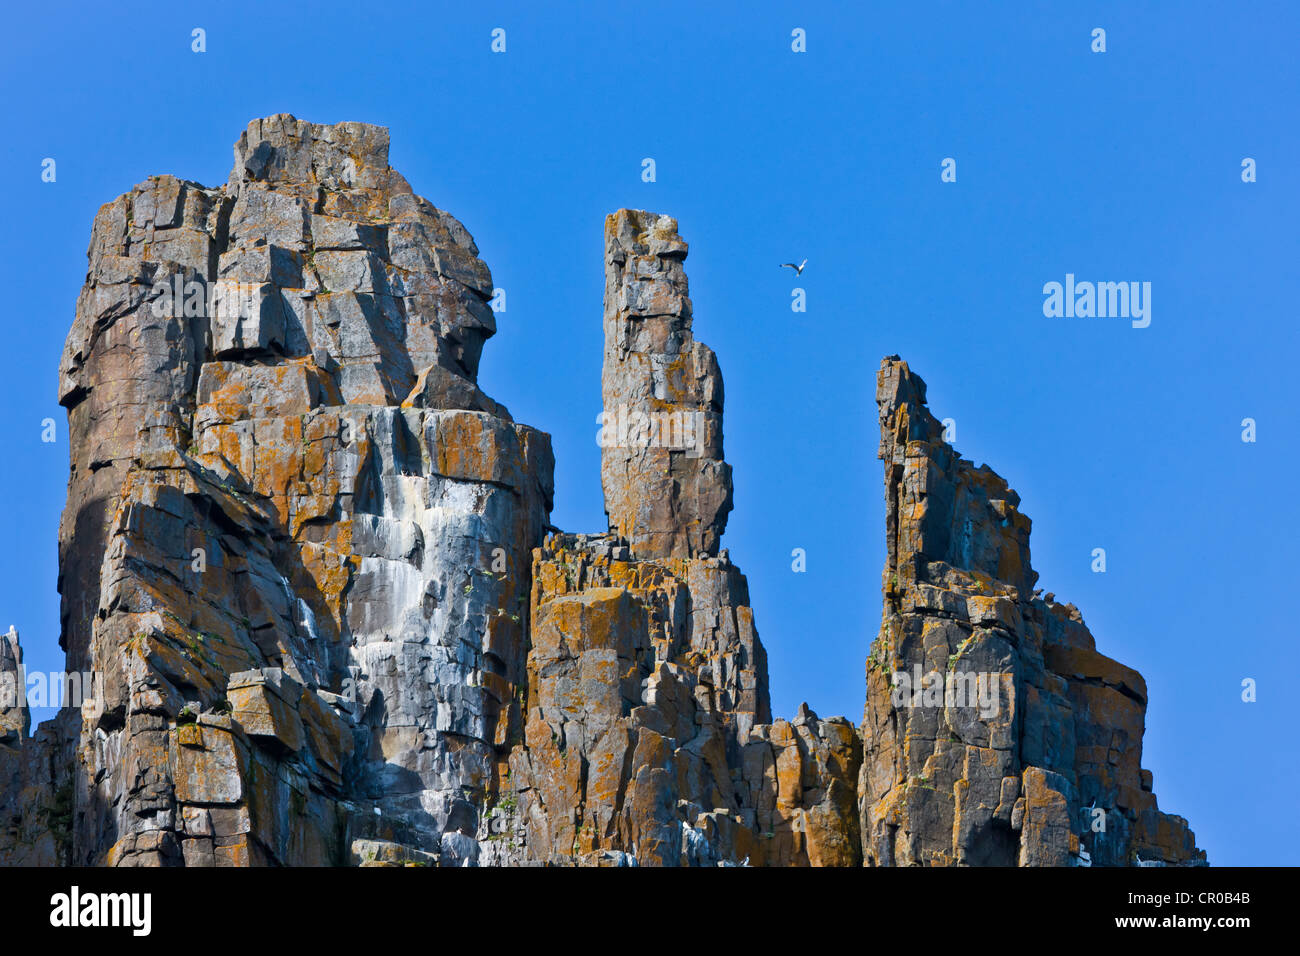 La colonia di uccelli a Alkefjellet, basalto cliff vivace con 60.000 coppie riproduttrici di Brunnich's guillemots, Spitsbergen, Norvegia Foto Stock